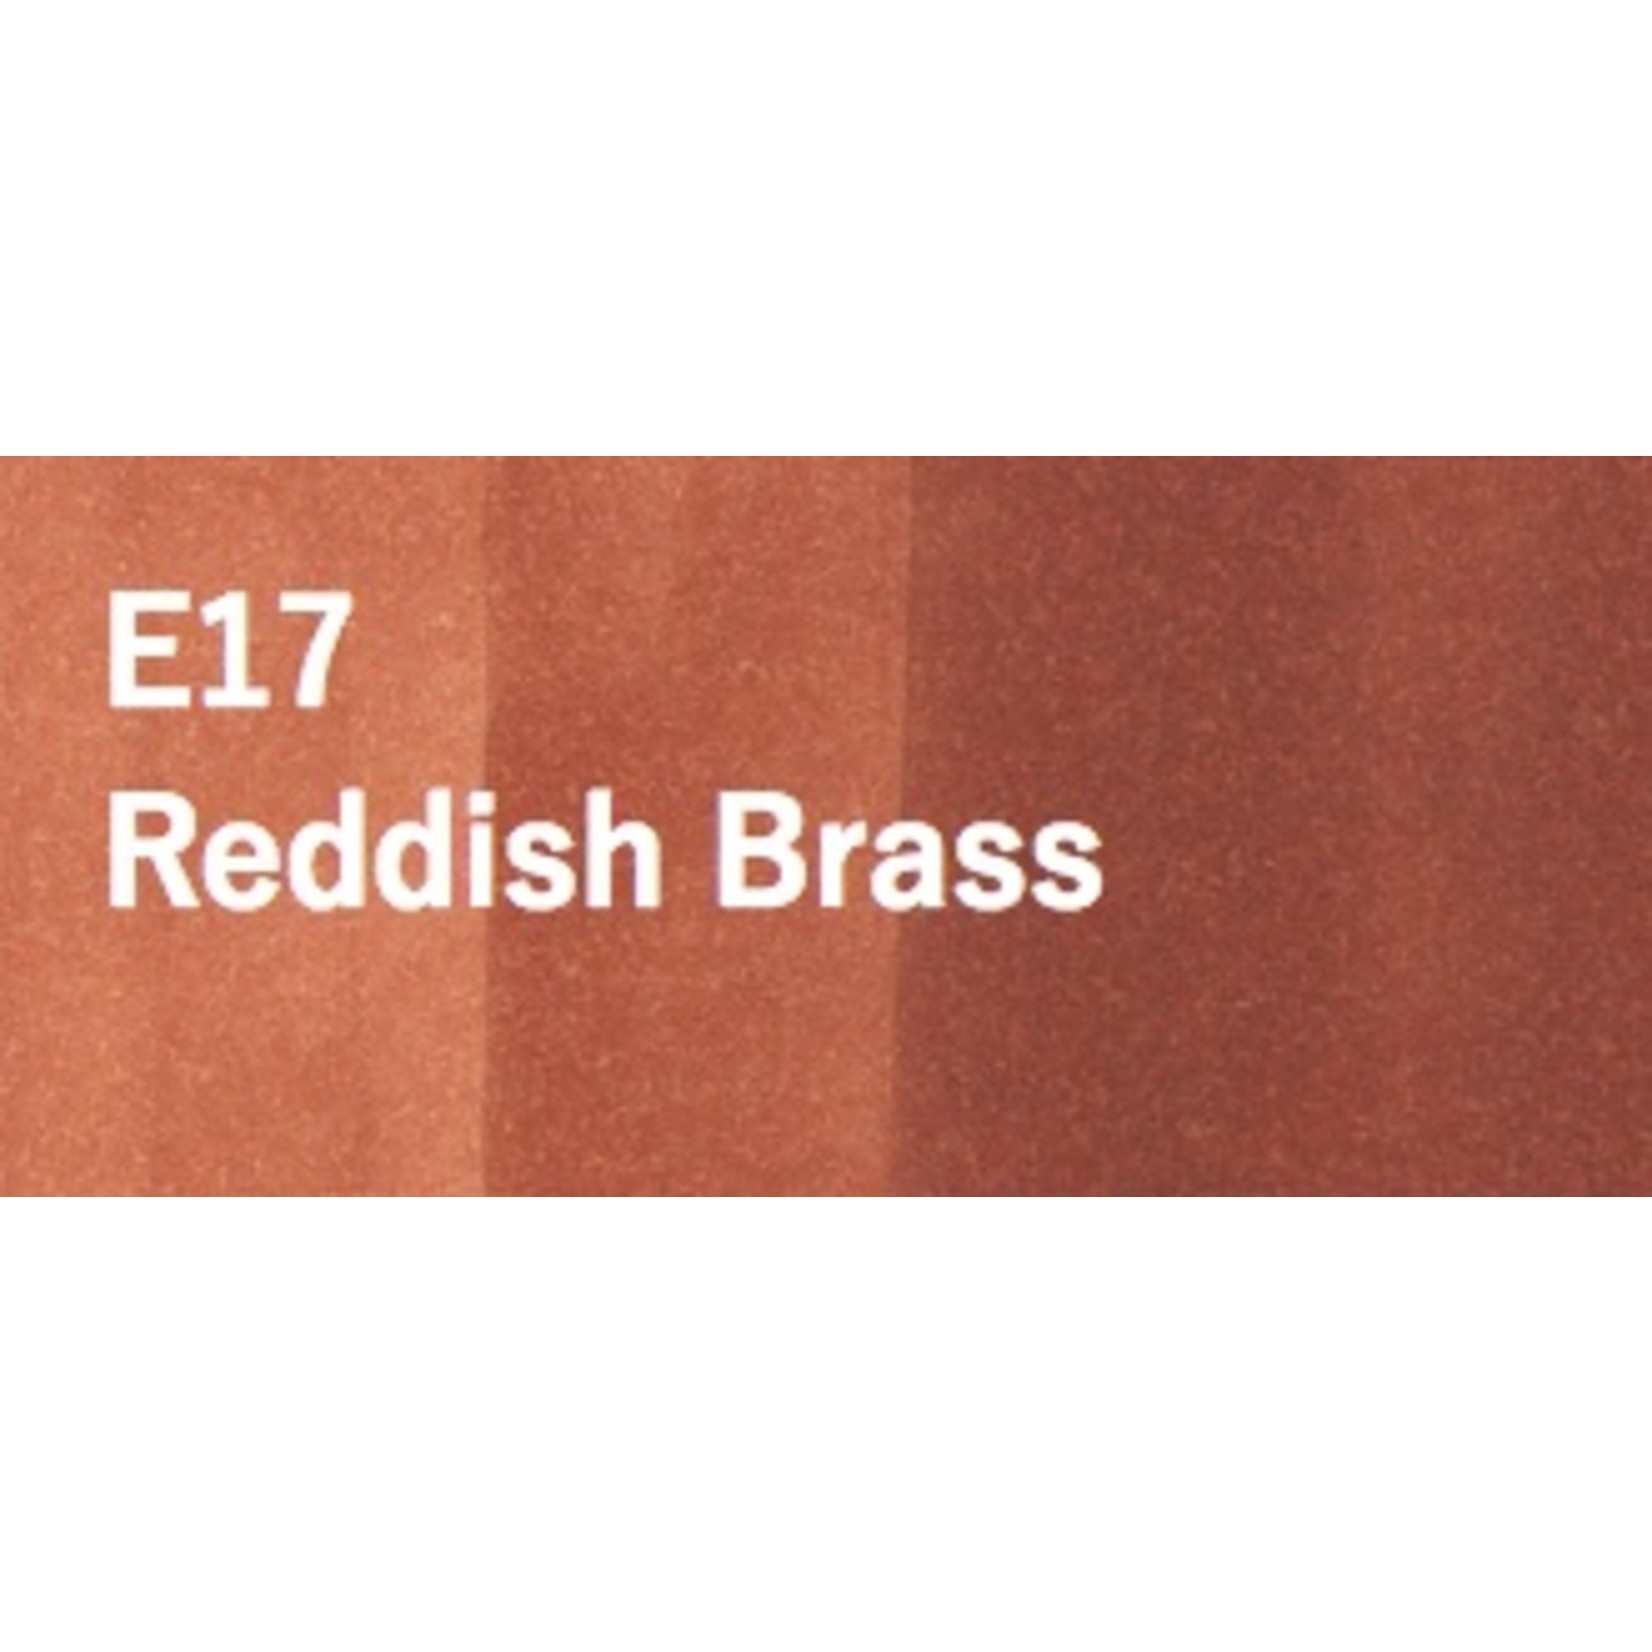 Copic COPIC SKETCH E17 REDDISH BRASS